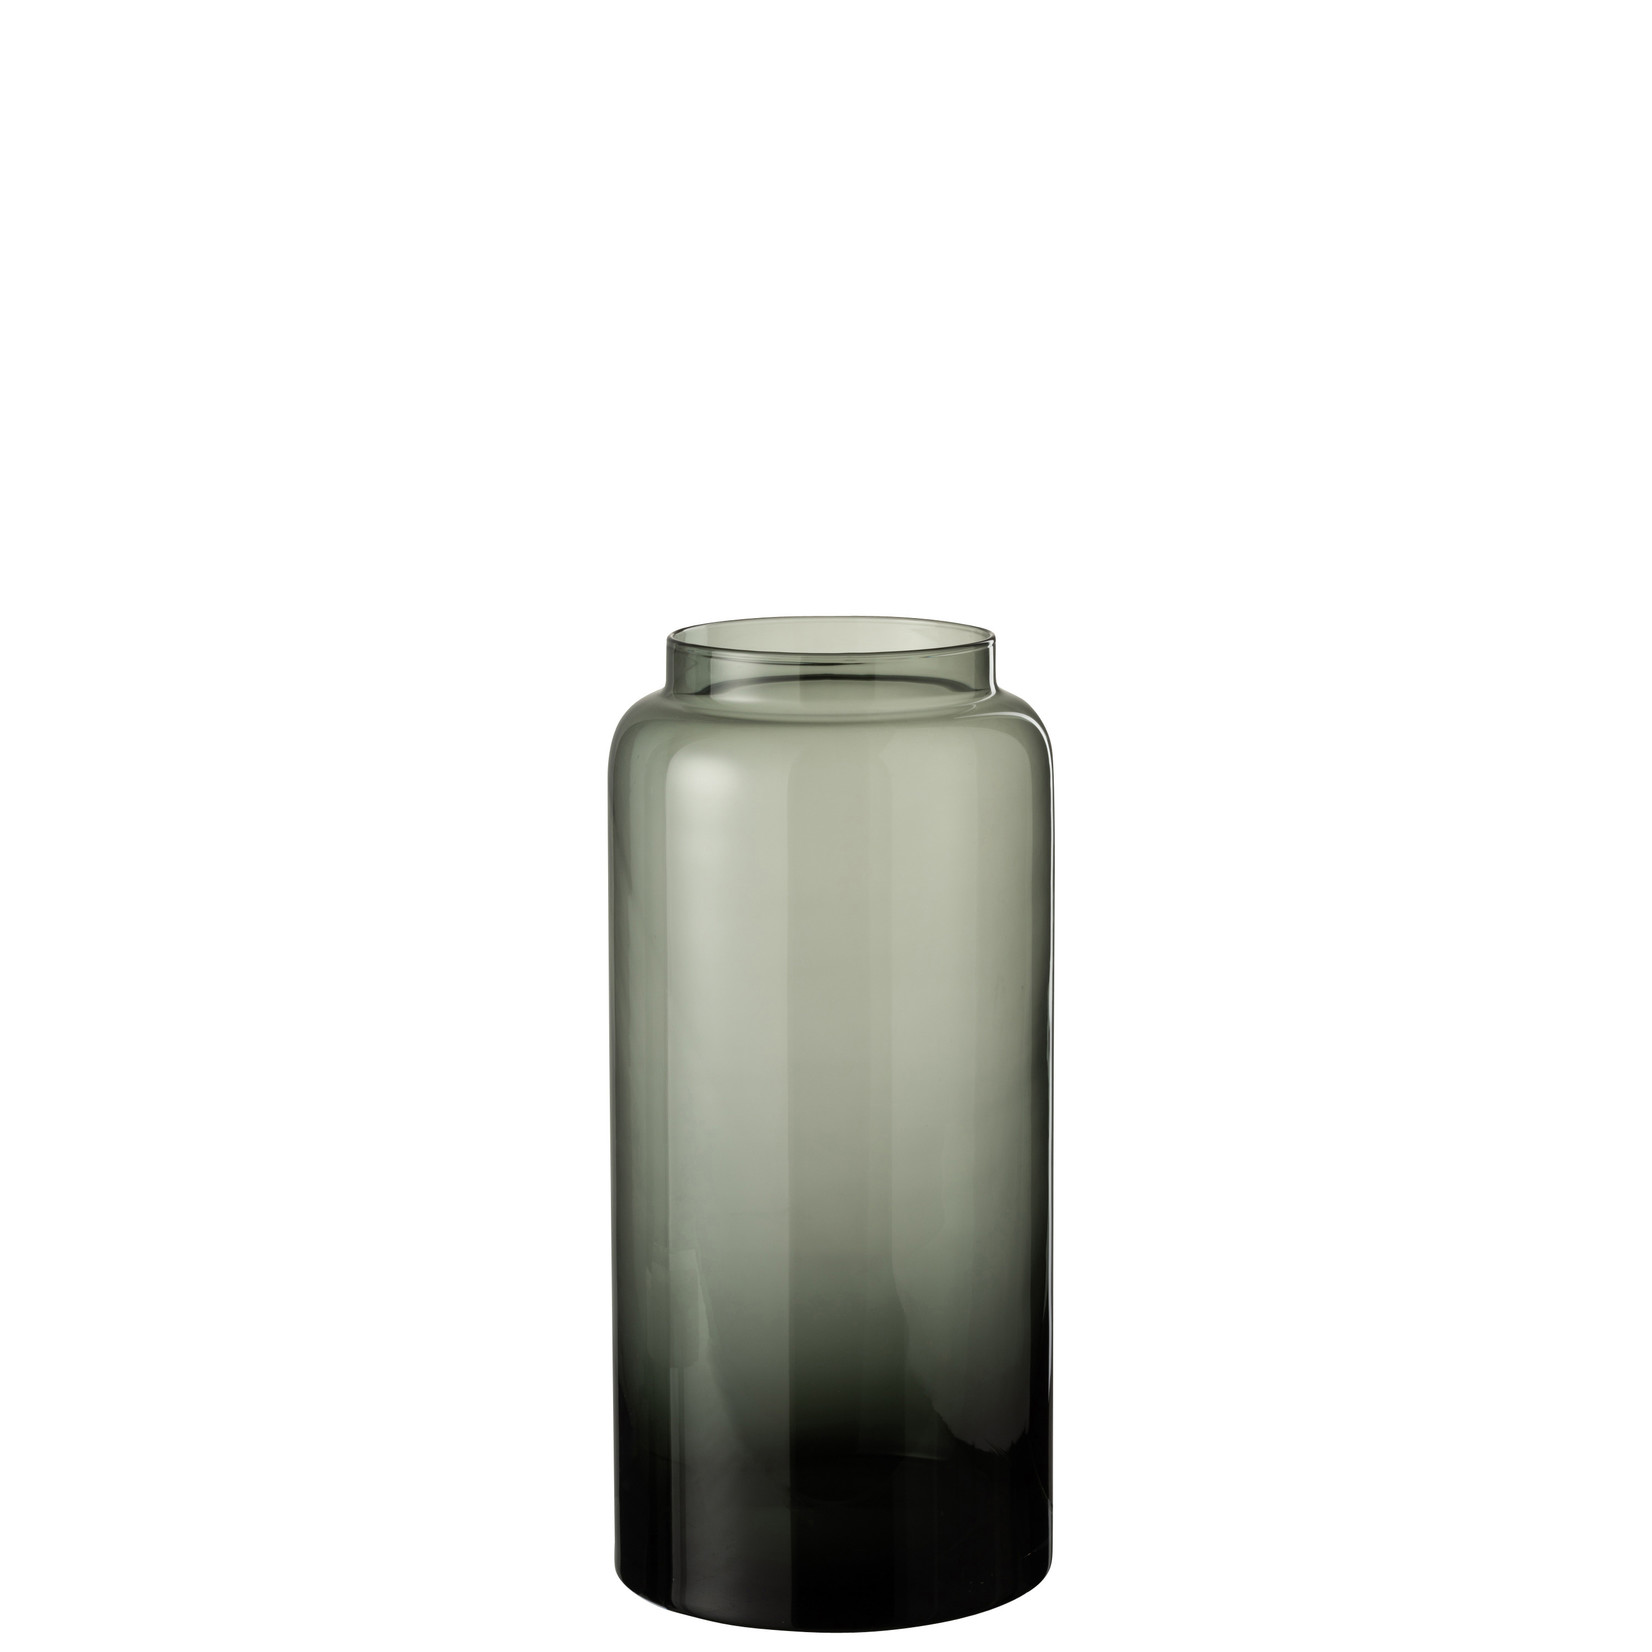 J-Line Bottles Vase Low Glass Gray Small